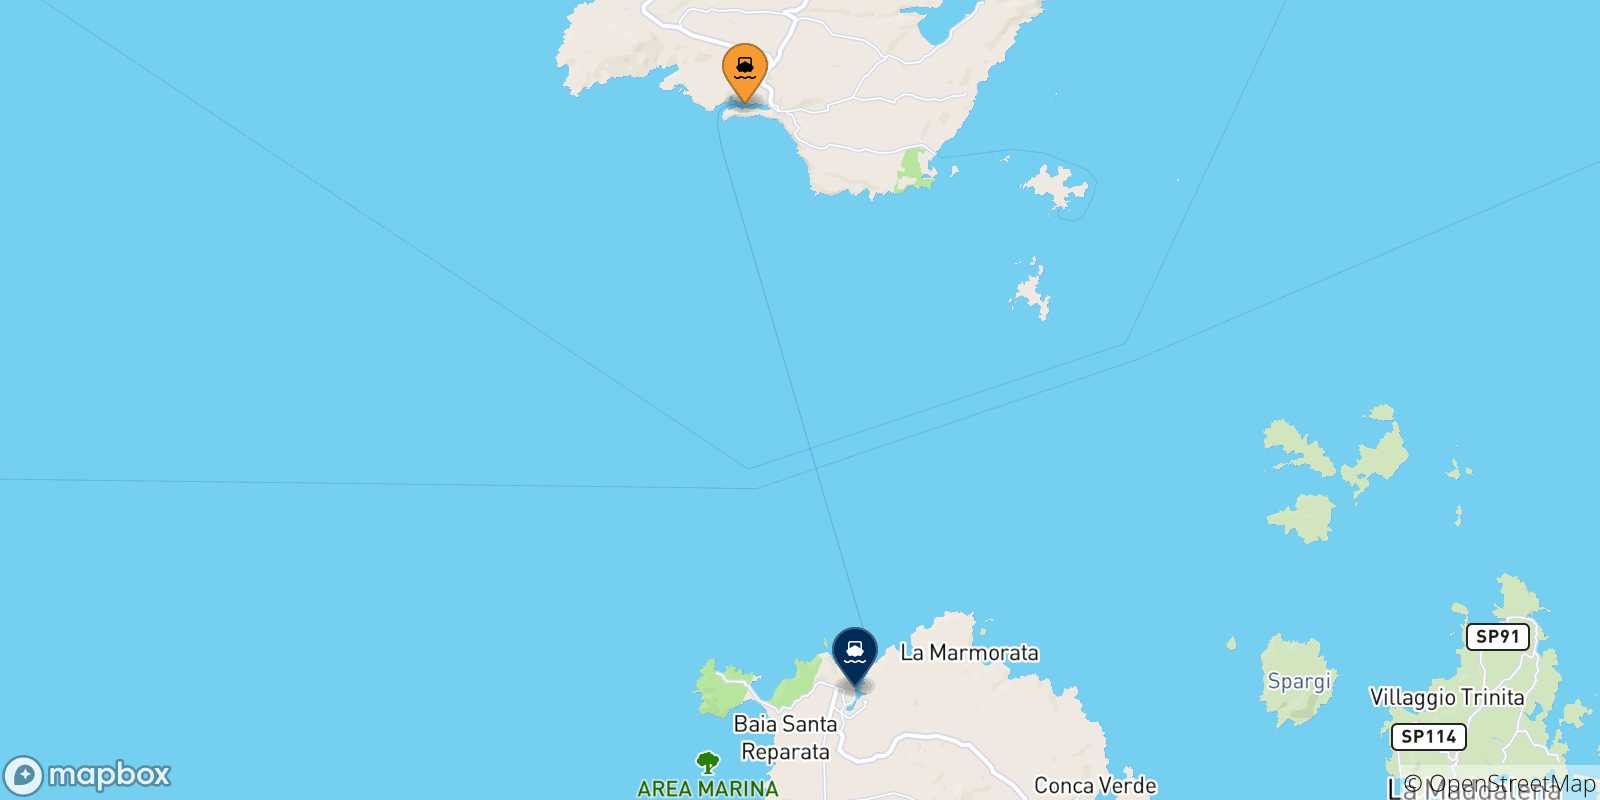 Mapa de las posibles rutas entre Bonifacio y  Italia